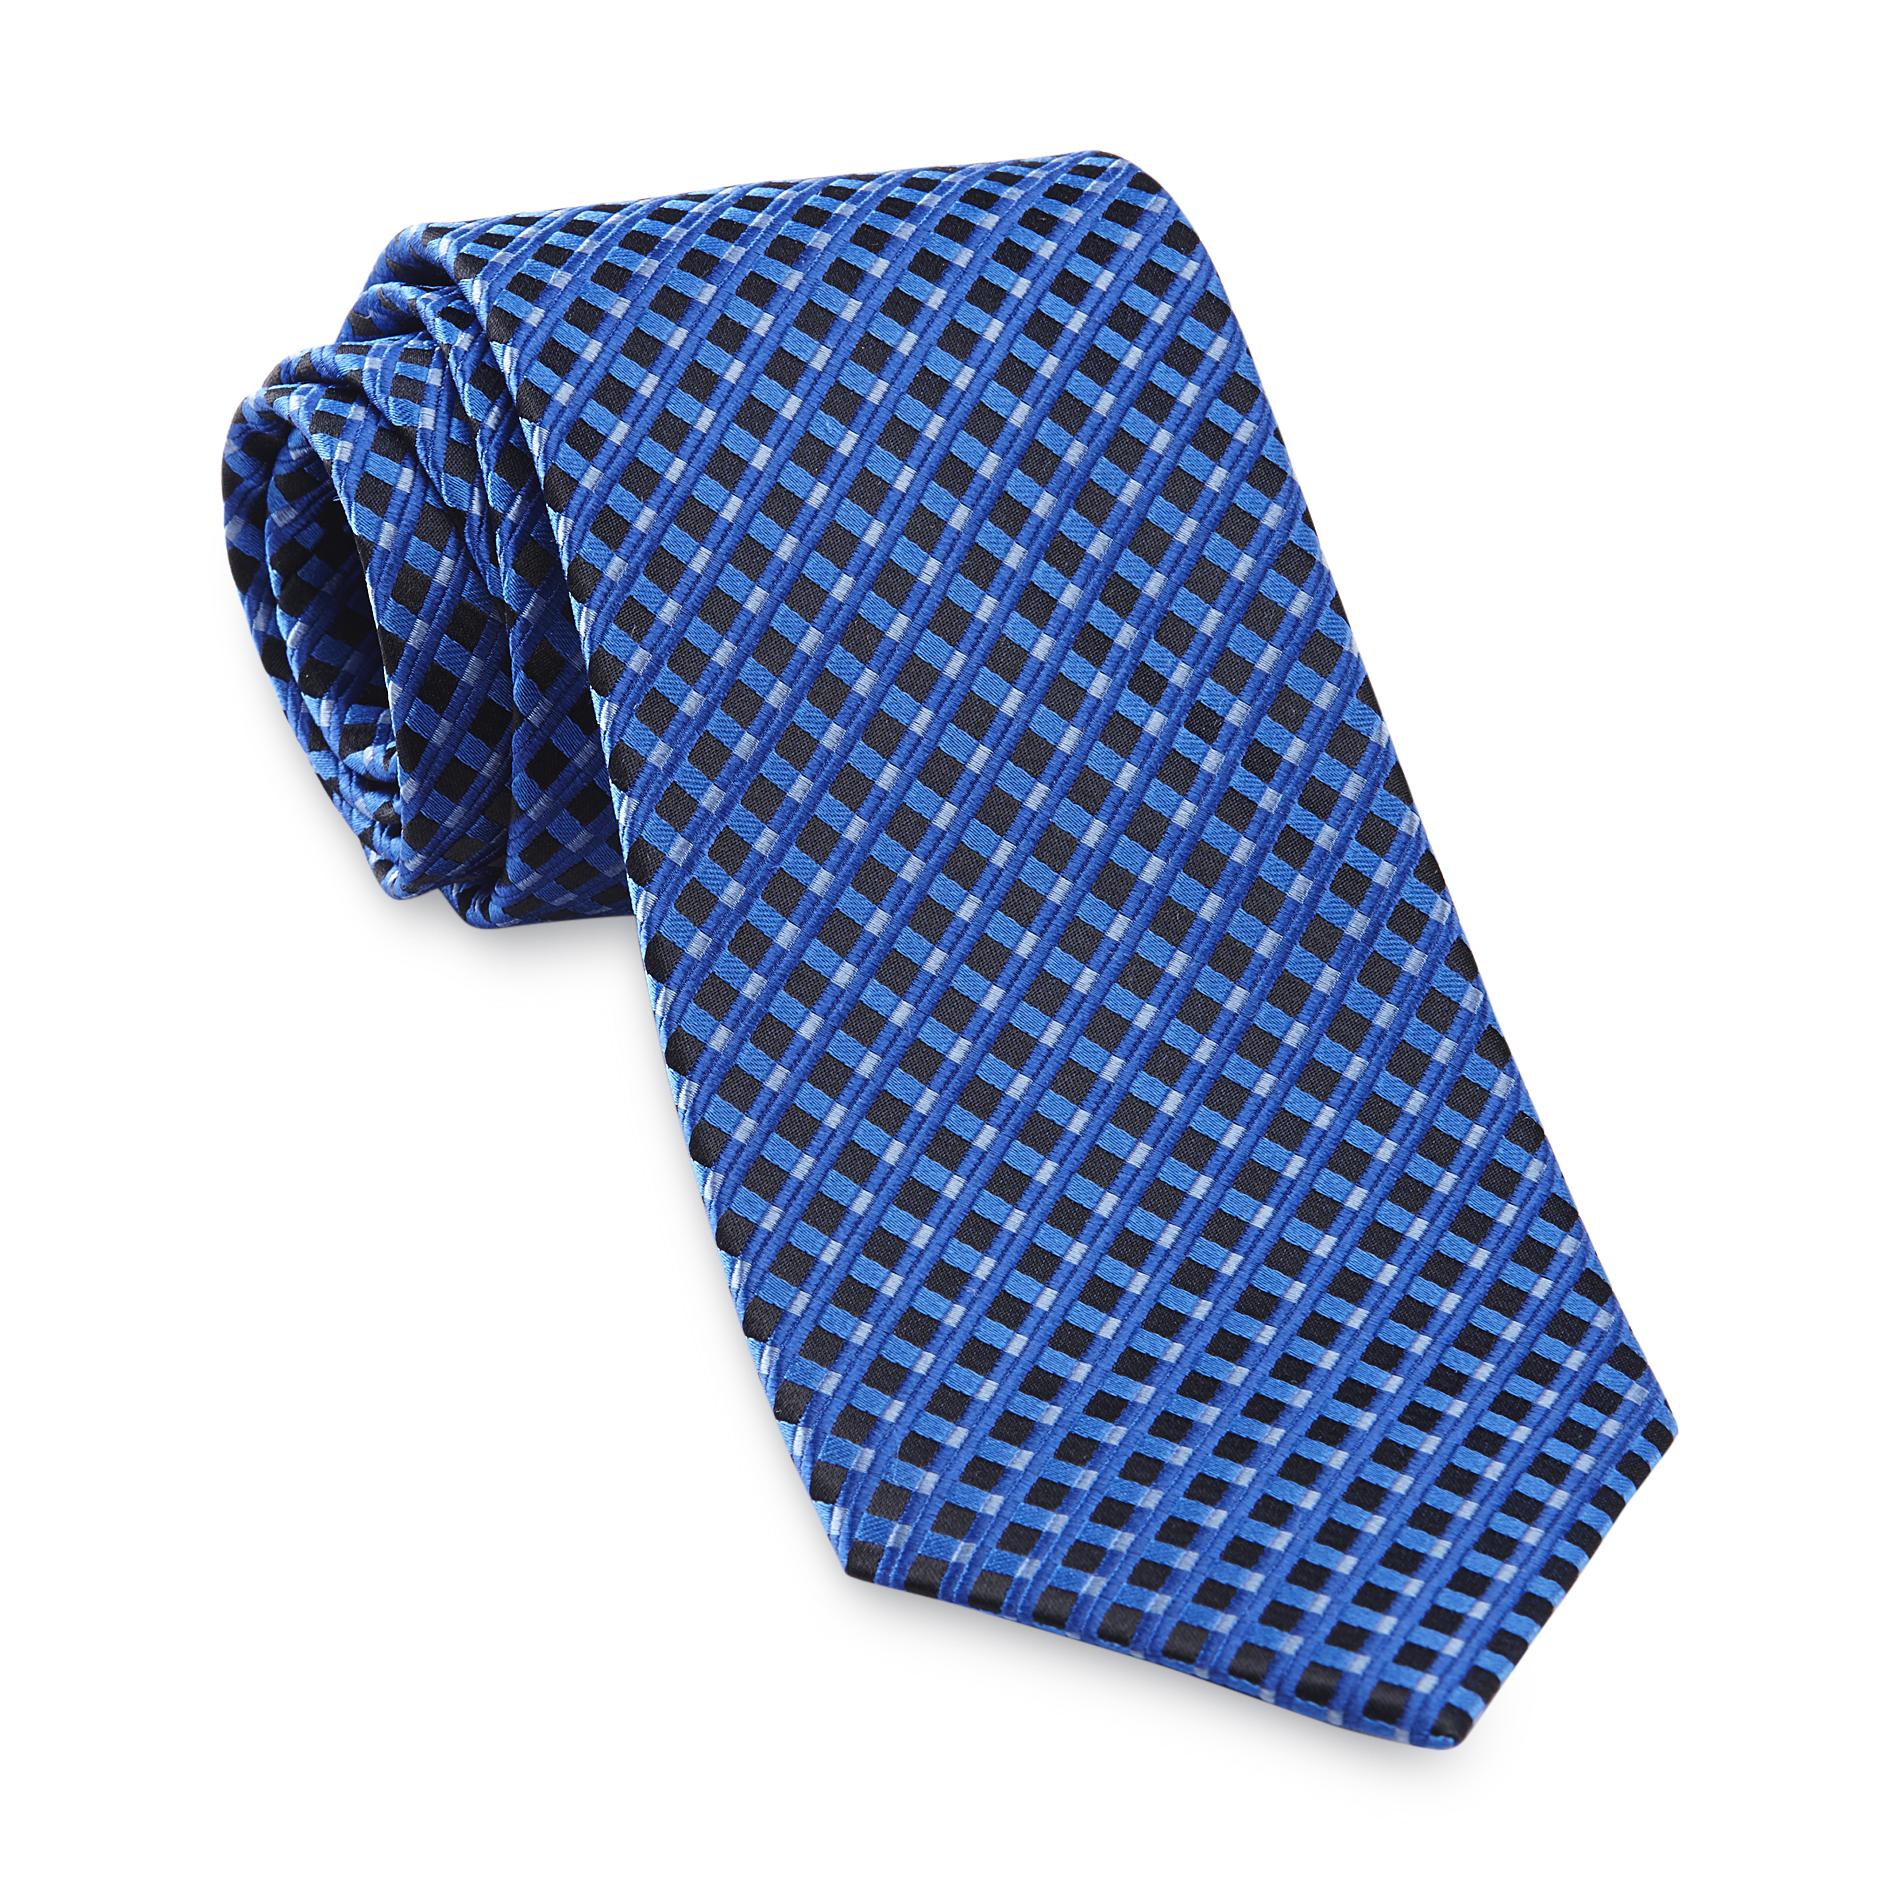 Covington Men's Silk Necktie - Dimensional Grid